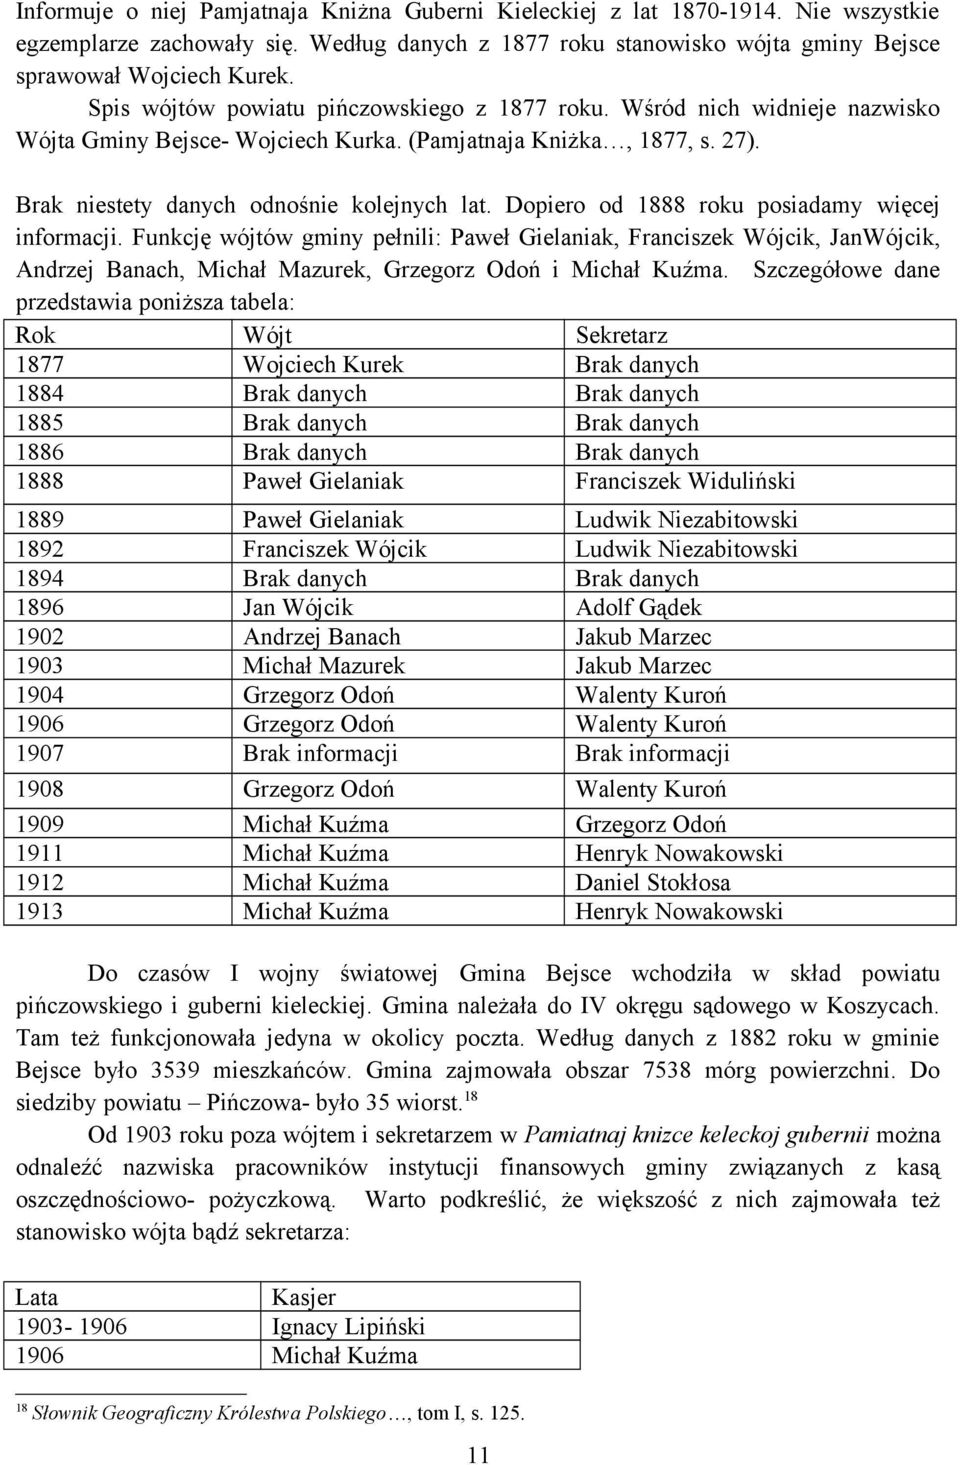 Dopiero od 1888 roku posiadamy więcej informacji. Funkcję wójtów gminy pełnili: Paweł Gielaniak, Franciszek Wójcik, JanWójcik, Andrzej Banach, Michał Mazurek, Grzegorz Odoń i Michał Kuźma.